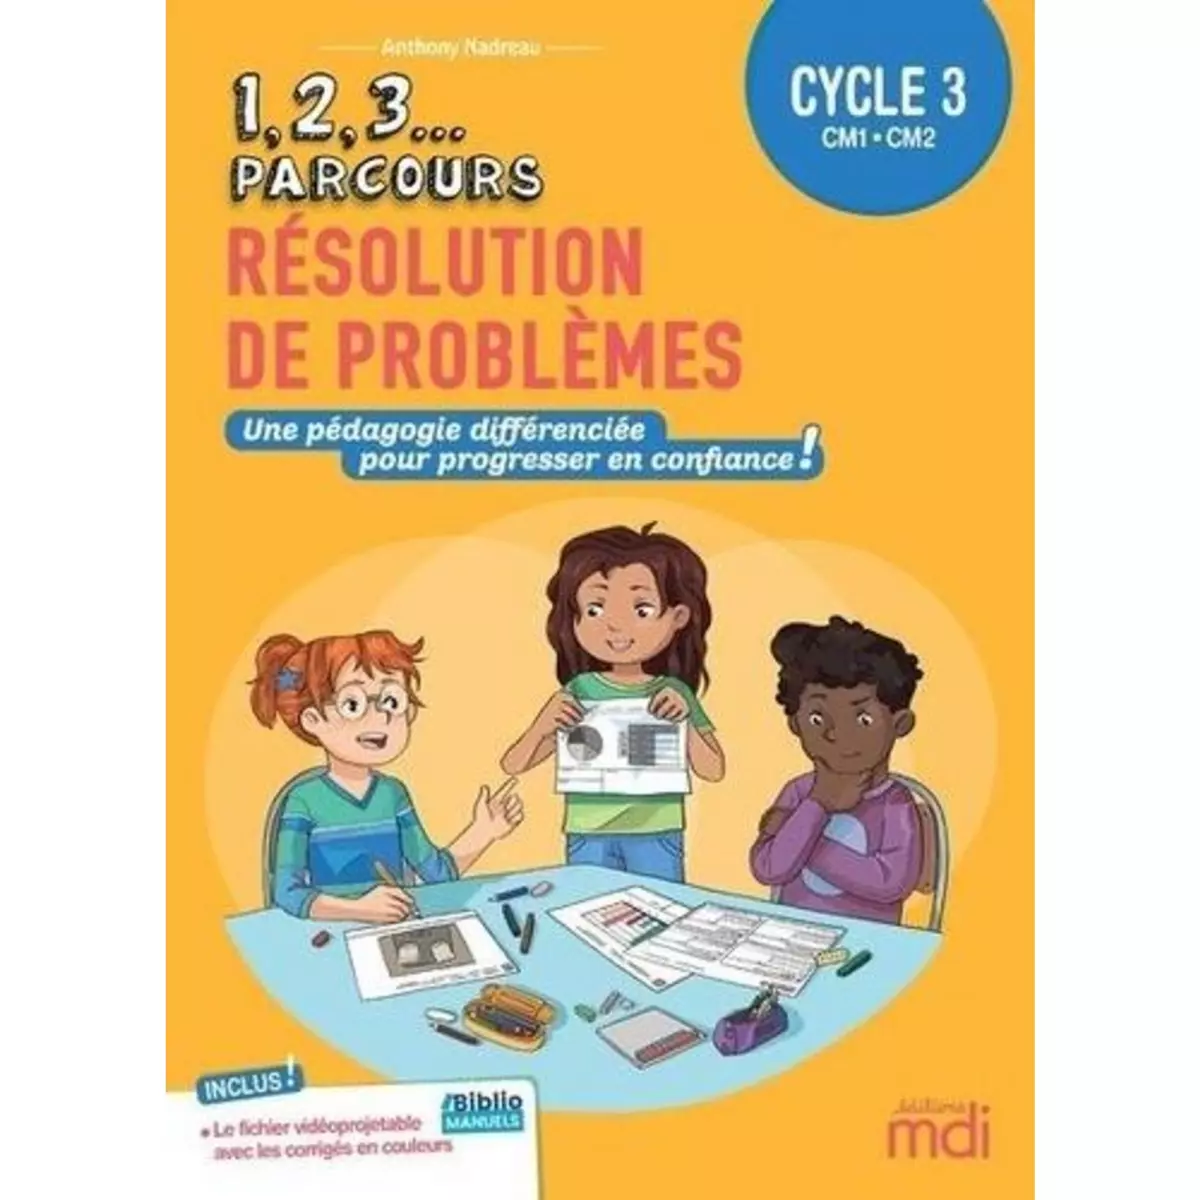  RESOLUTION DE PROBLEMES CYCLE 3 CM1-CM2. FICHIER A PHOTOCOPIER, Nadreau Anthony